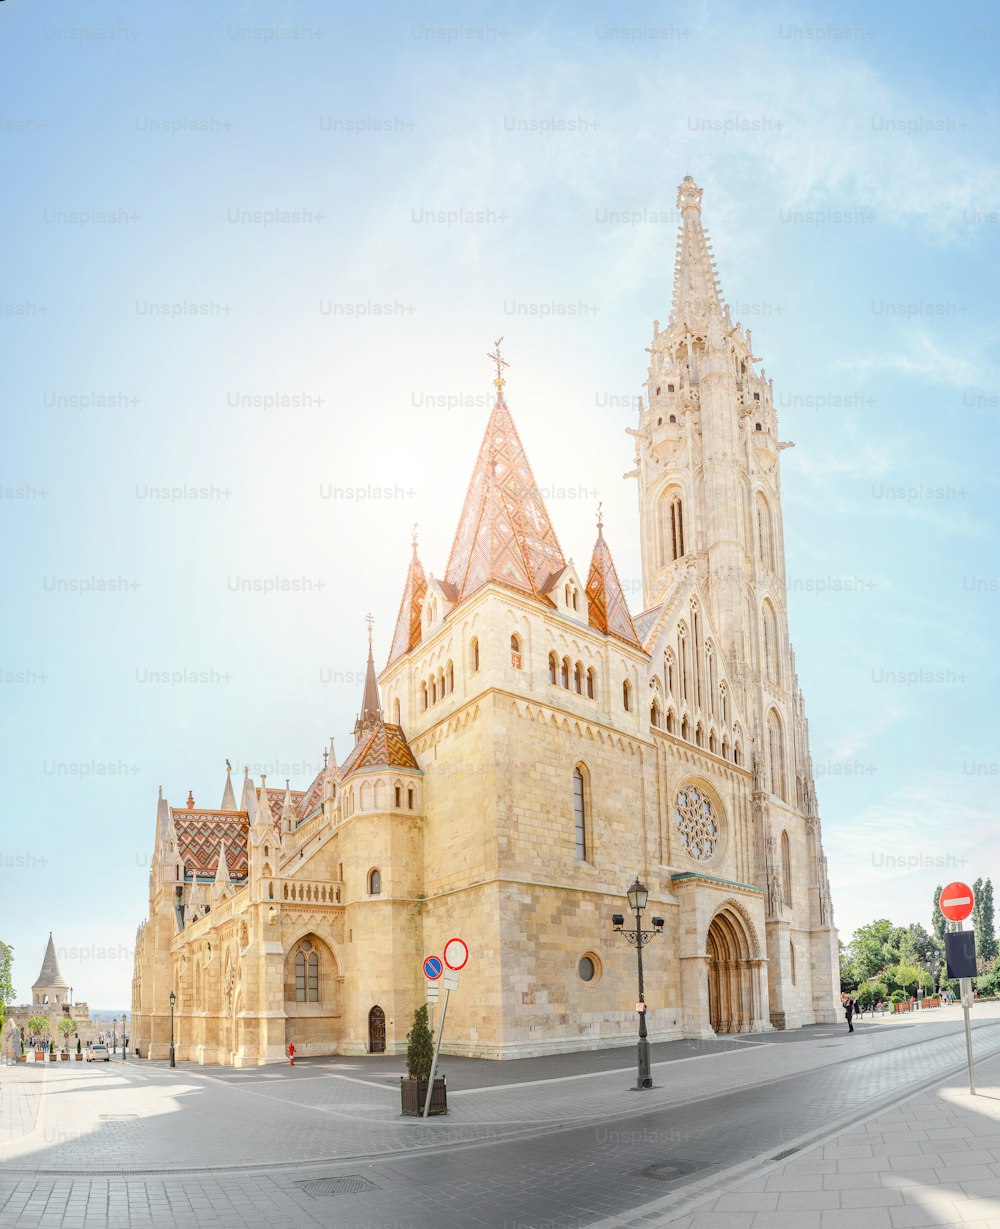 Principal atracción turística y punto de referencia de Budapest: la increíble arquitectura de la Catedral de San Matías. La iglesia es el templo gótico más grande de Hungría.